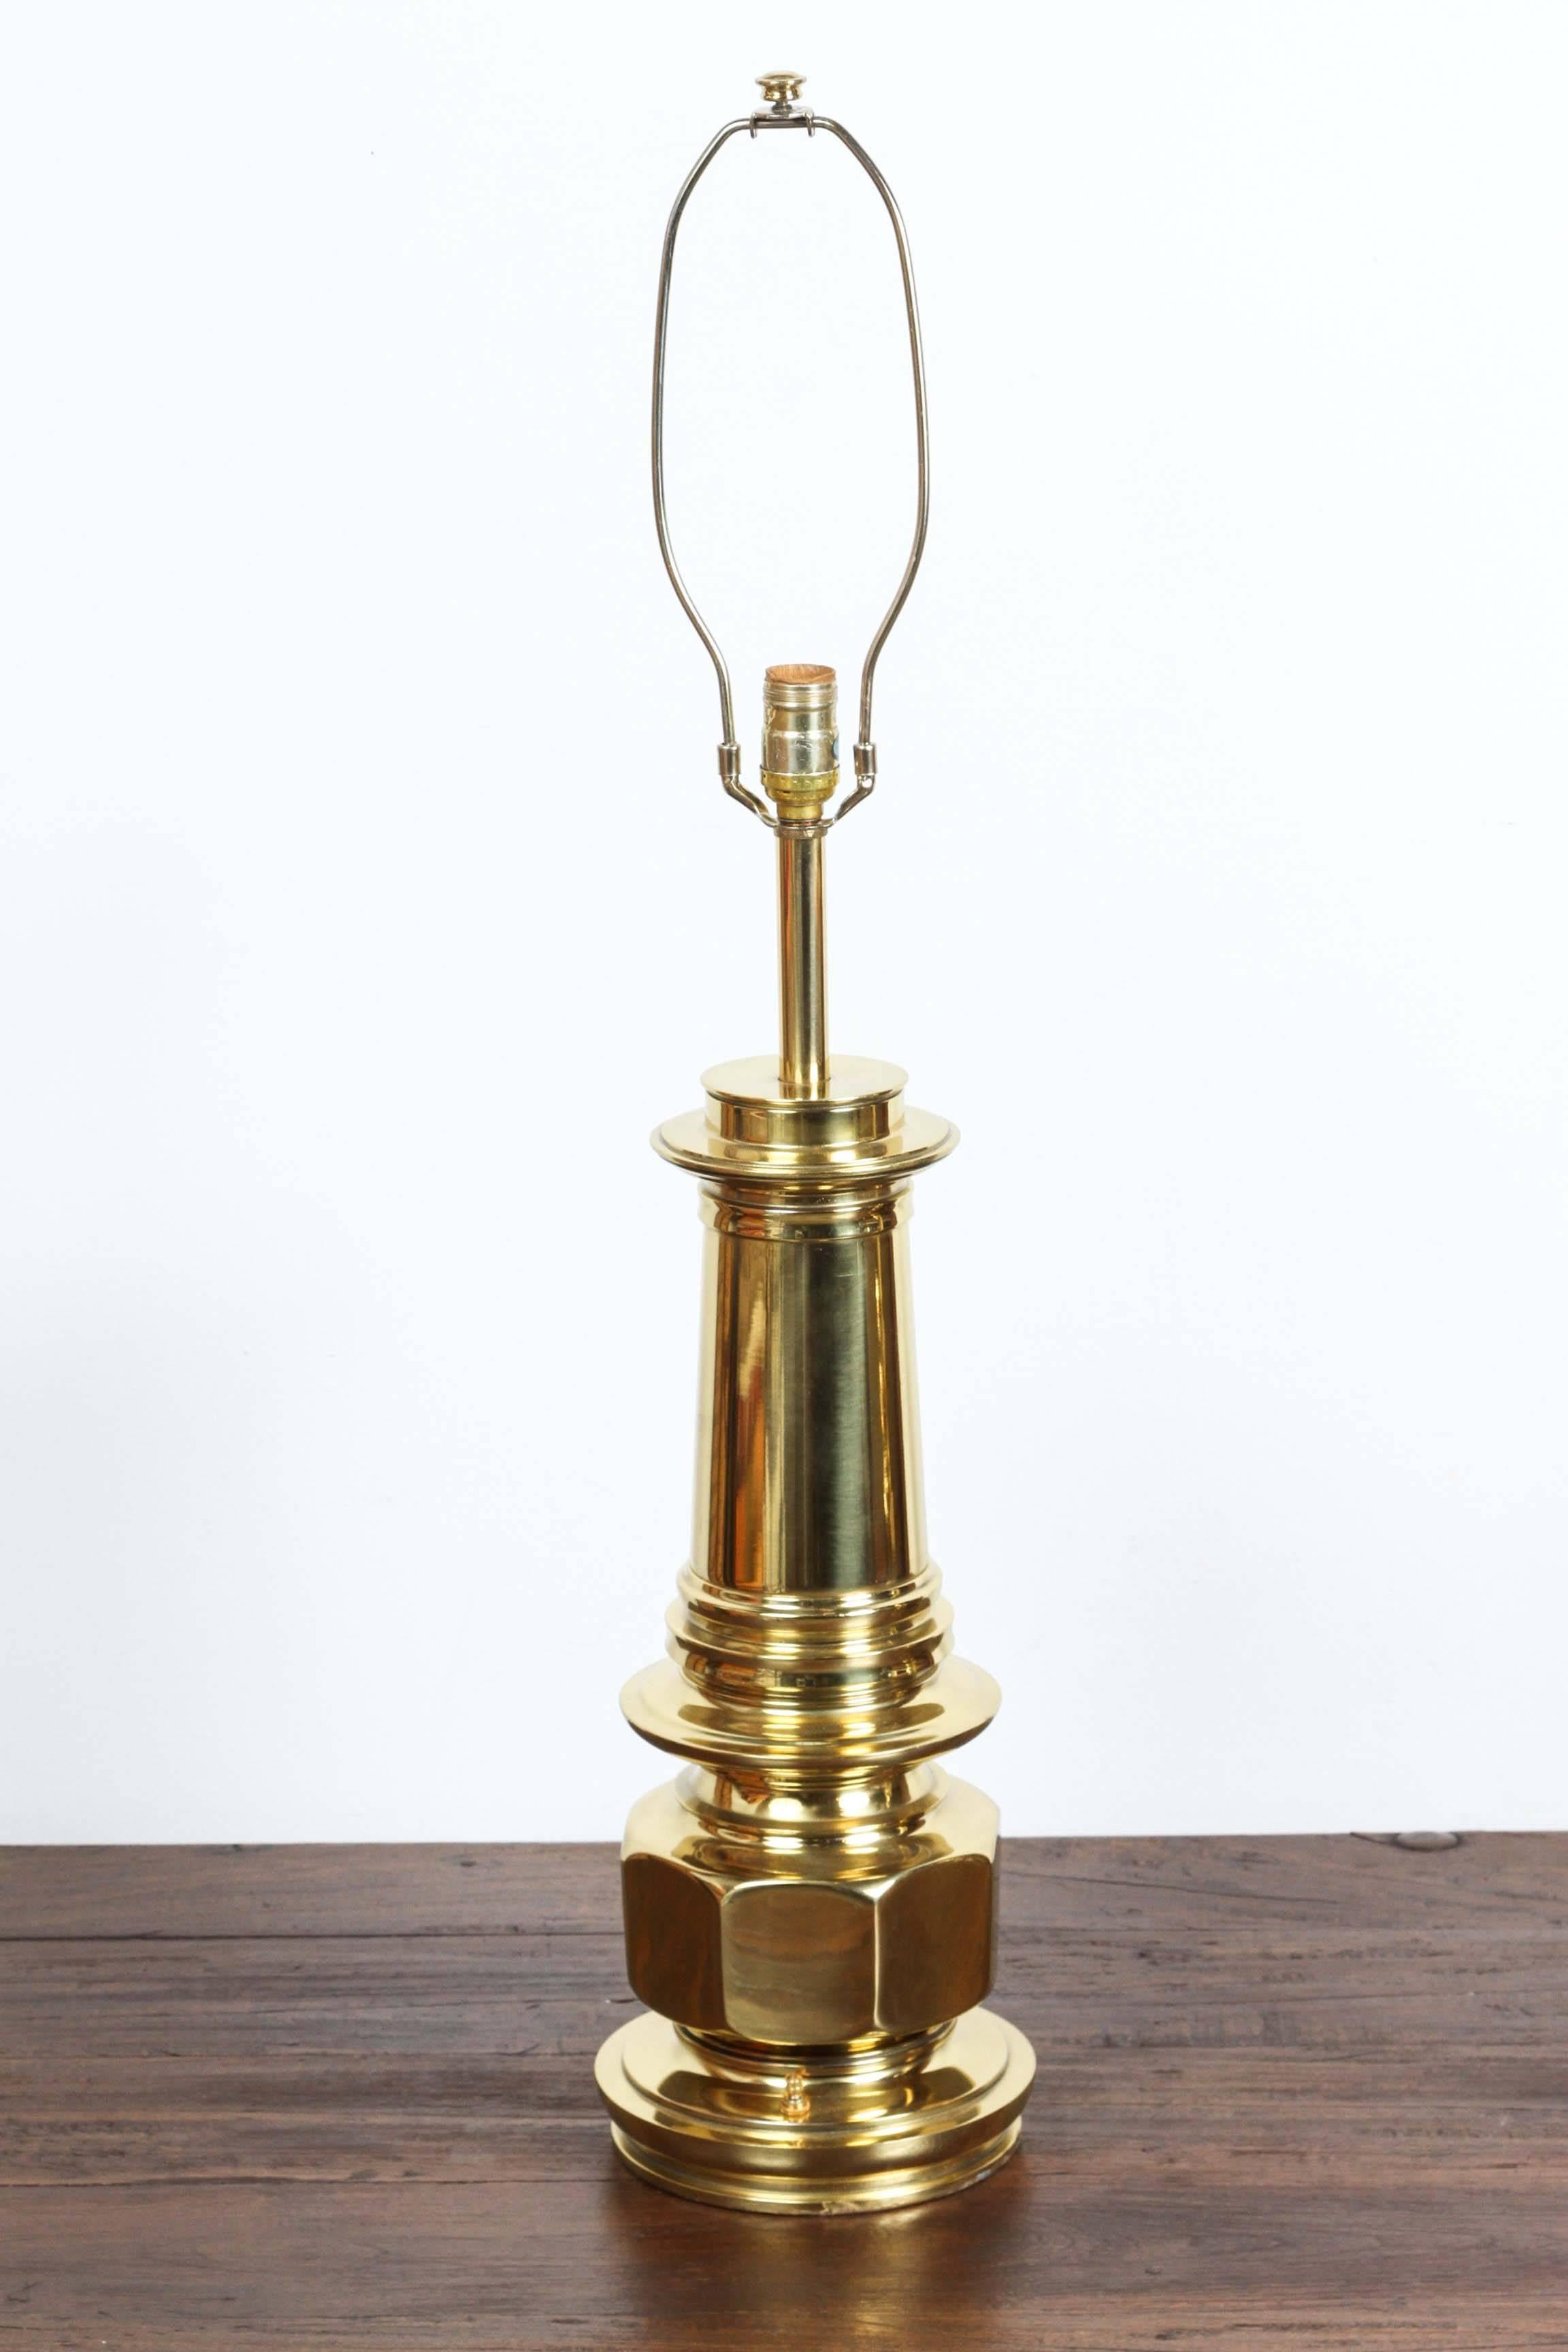 Elegantes Paar modernistischer Tischlampen aus poliertem Goldmessing.
Fredrick Cooper im Hollywood-Regency-Stil.
Massive, schwere Tischlampen aus massivem Messing im marokkanischen, maurischen Stil.
Ein Paar Stehlampen aus den 1970er Jahren,